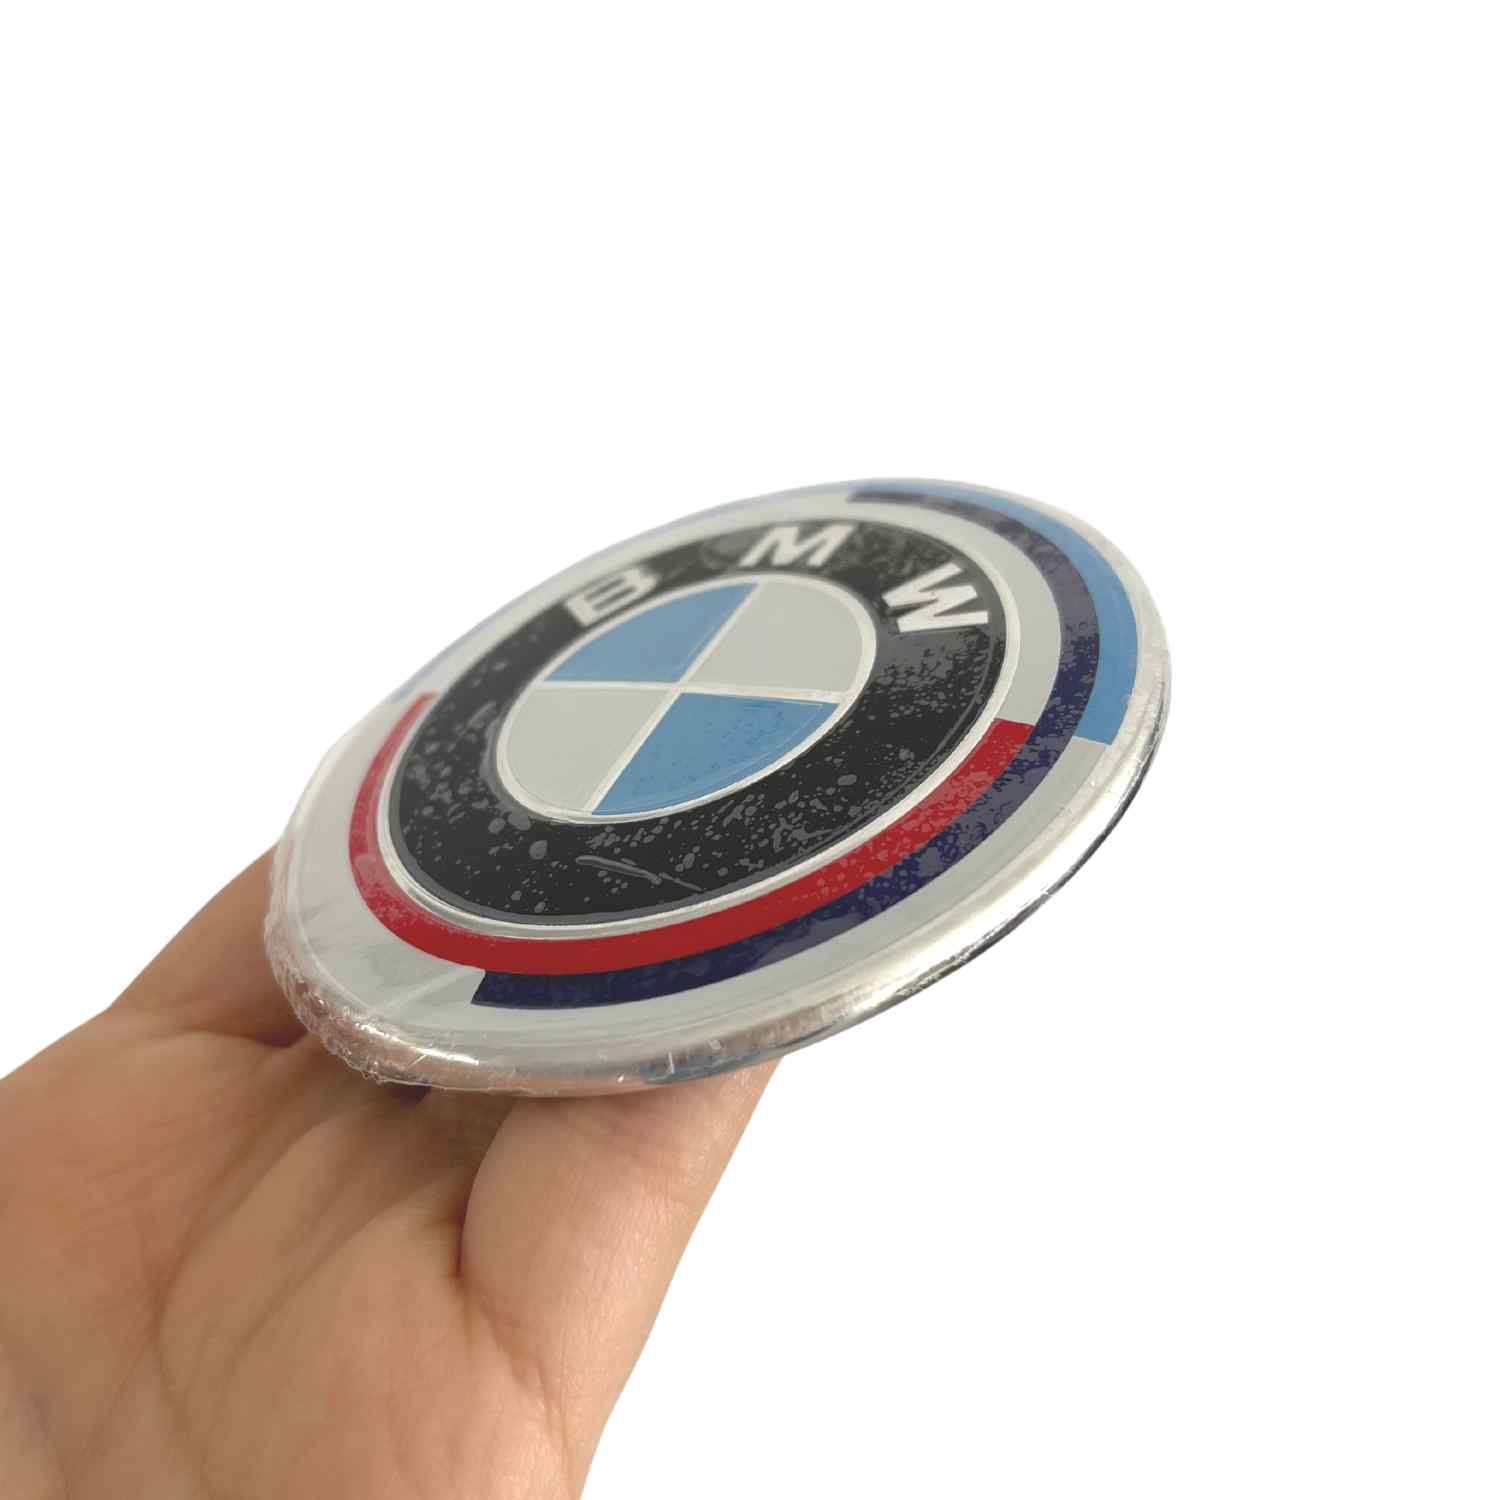 Emblema para capo compatible con BMW 82 mm 50 aniversario